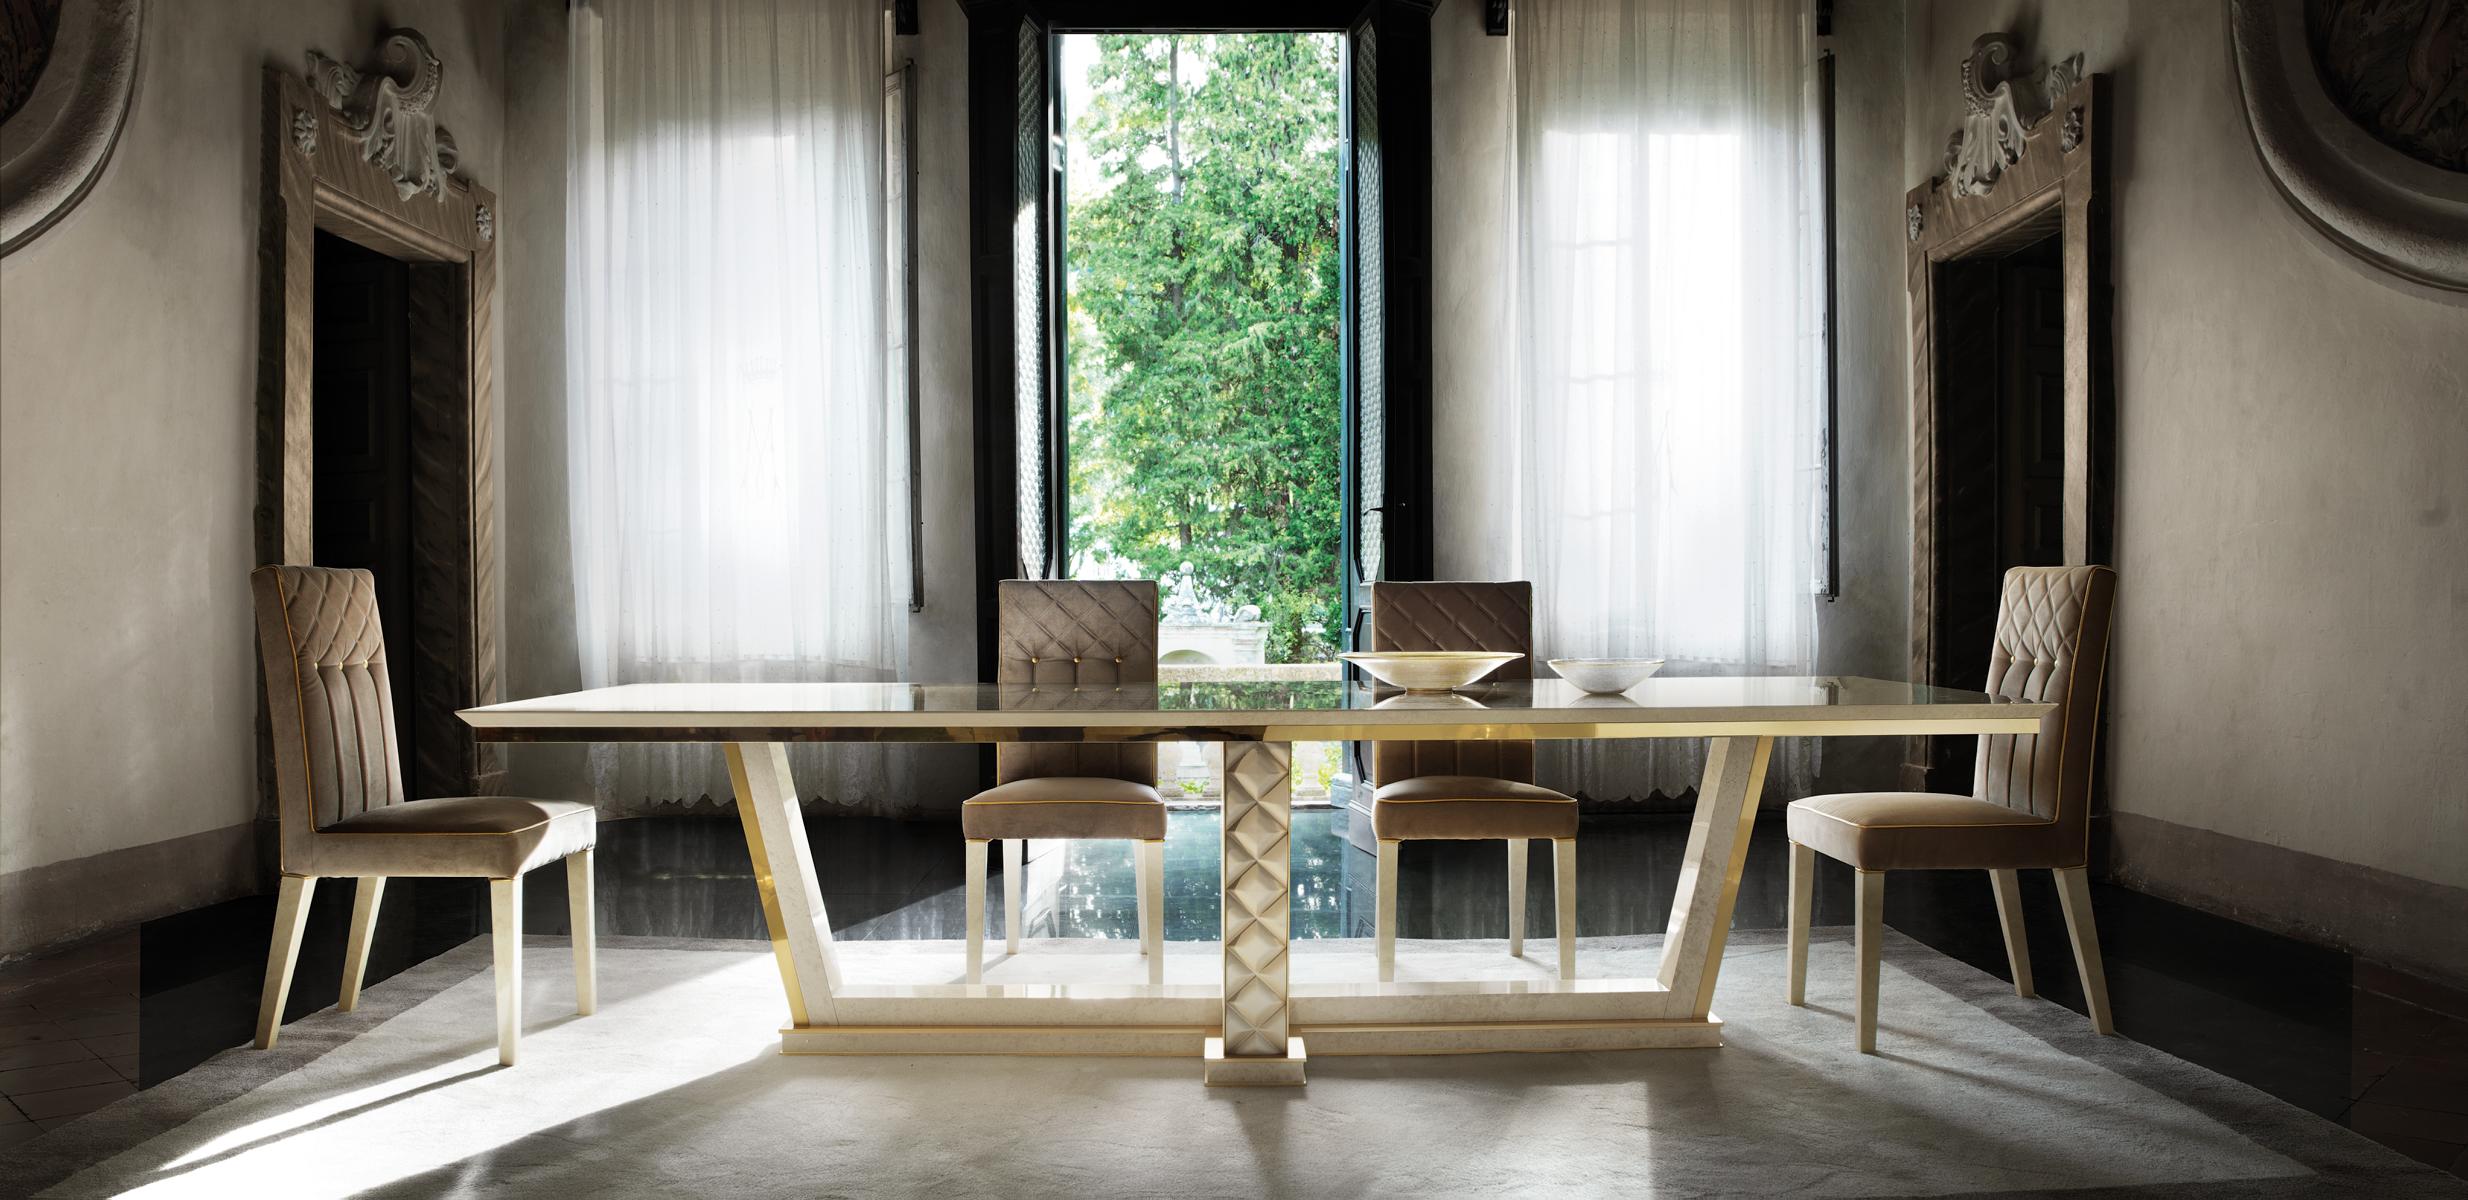 Esstisch + 8 Stühle Esszimmer Tisch Rokoko Barock Jugendstil royal luxus